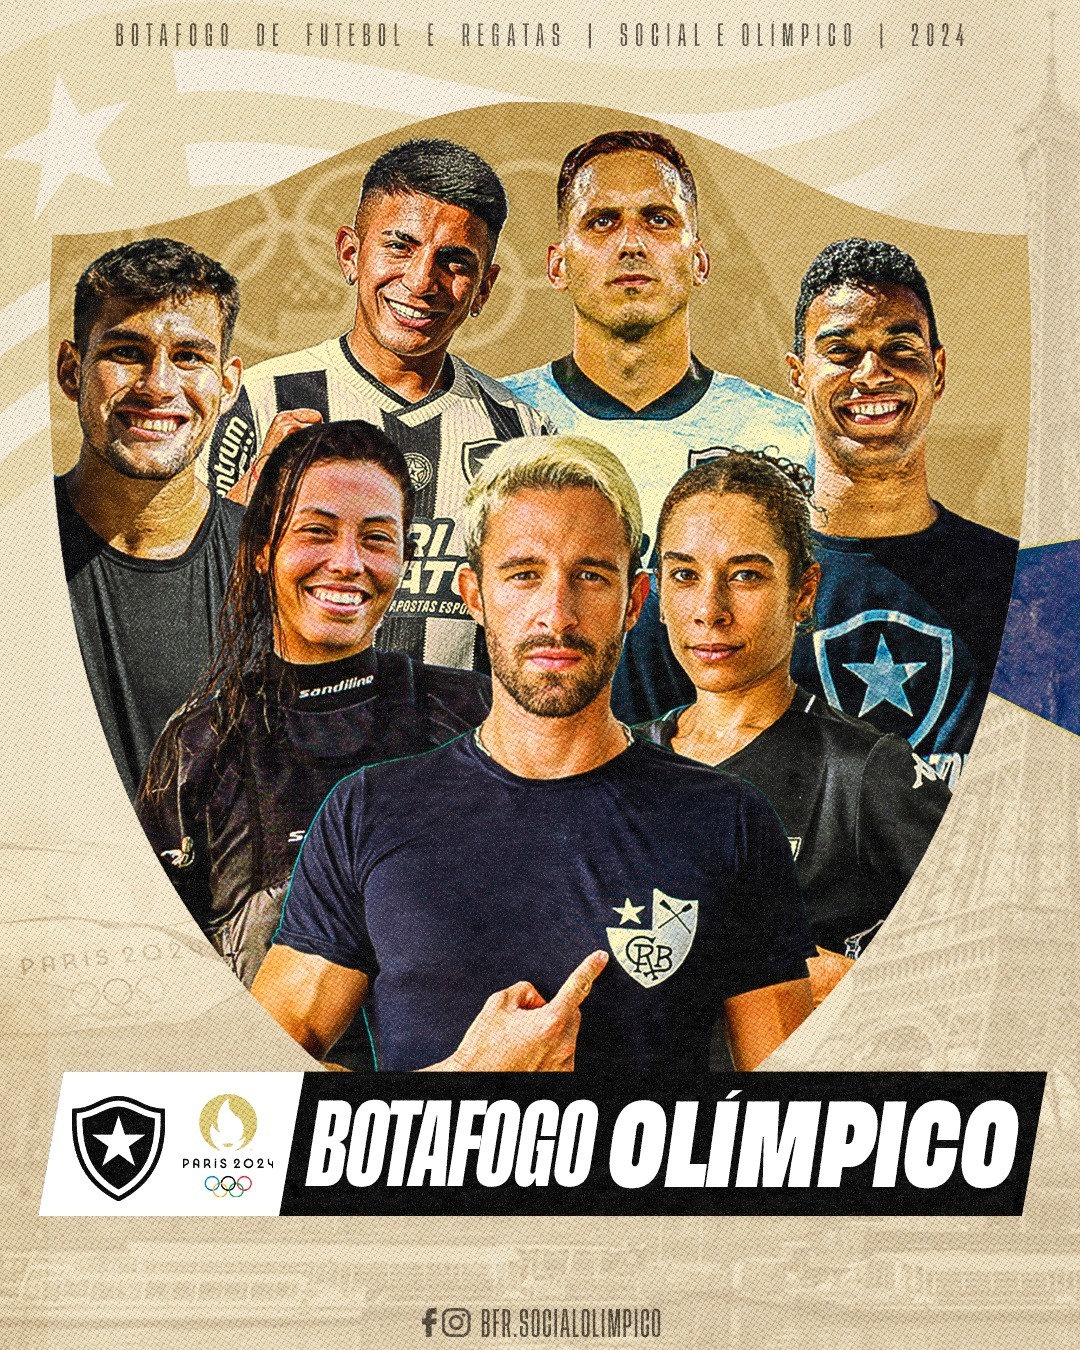 Foto: Divulgação Botafogo